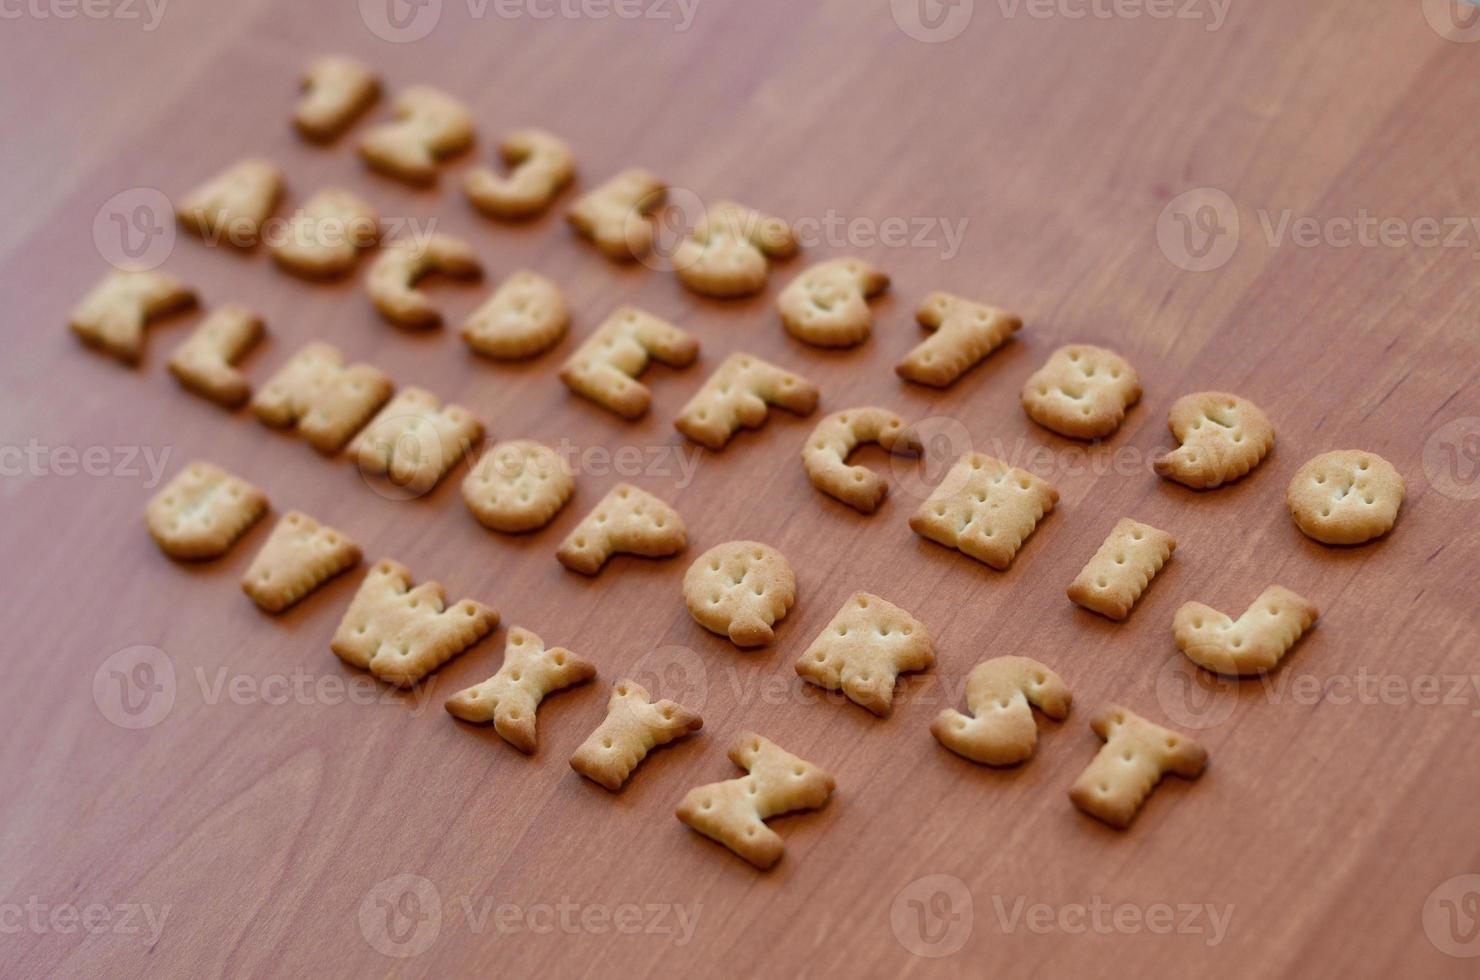 caracteres del alfabeto de galletas foto